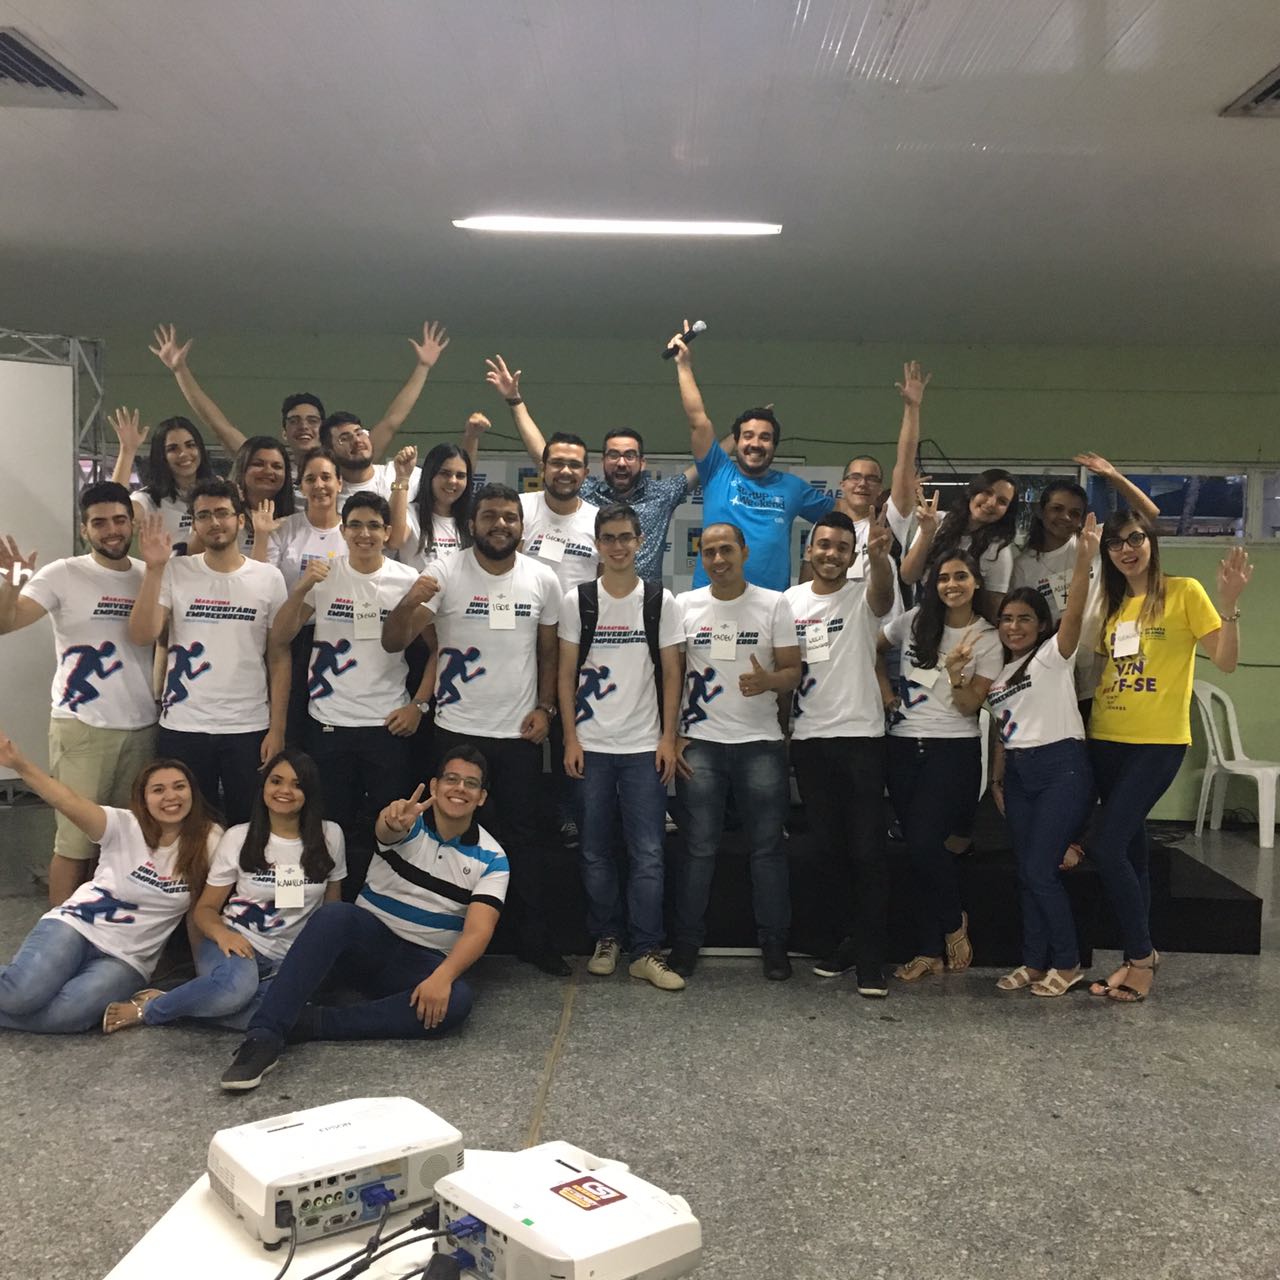 SEBRAE - Maratona de Programação SBC em São Paulo - Sympla